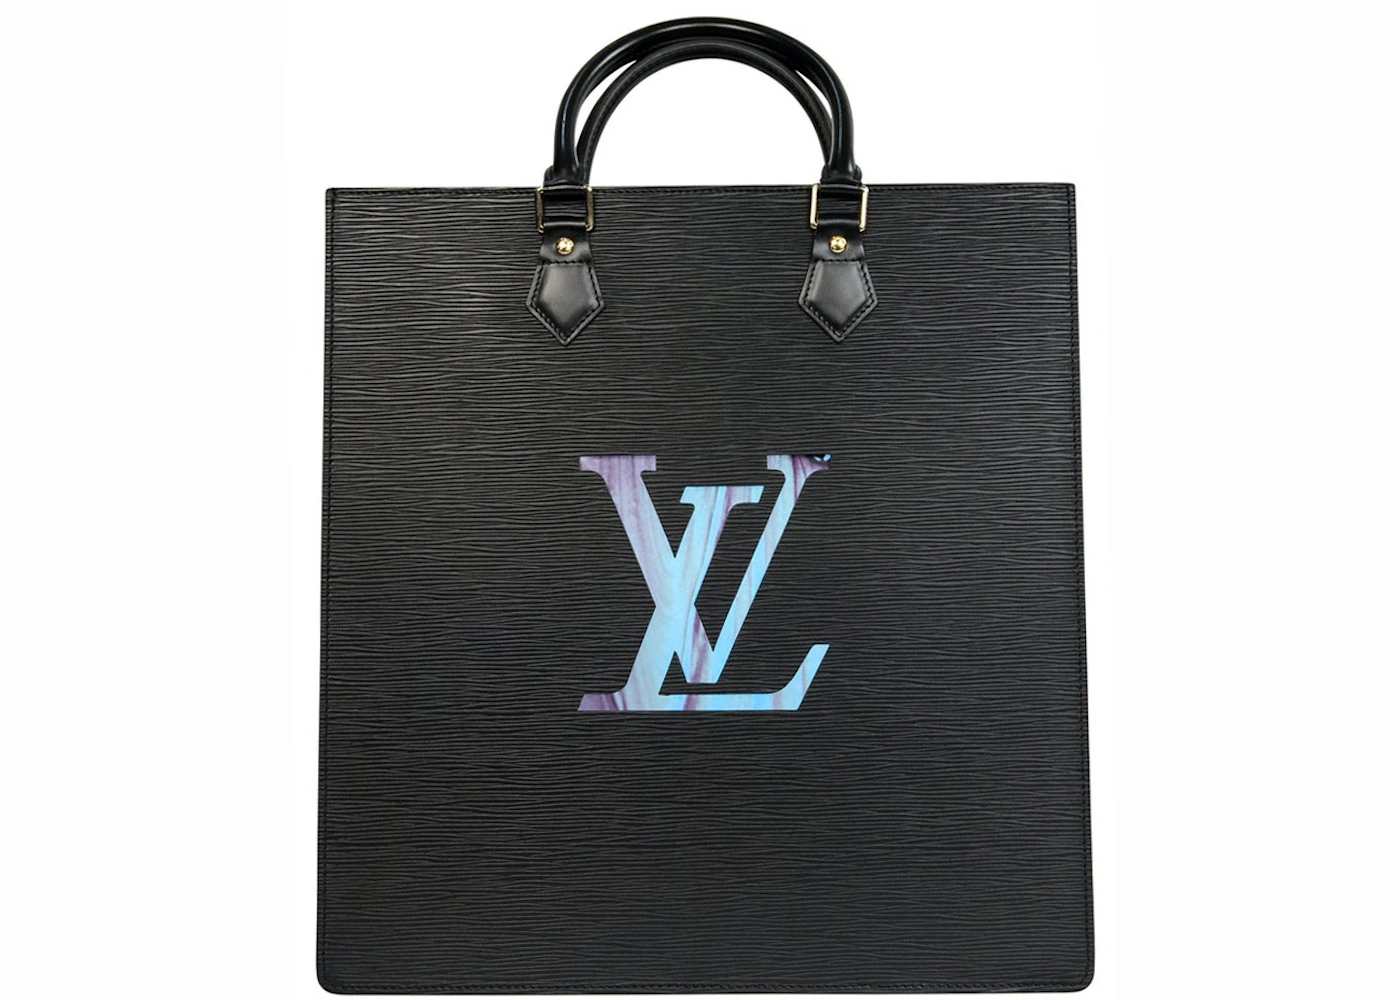 Louis Vuitton Sac Plat Bb Black EPI